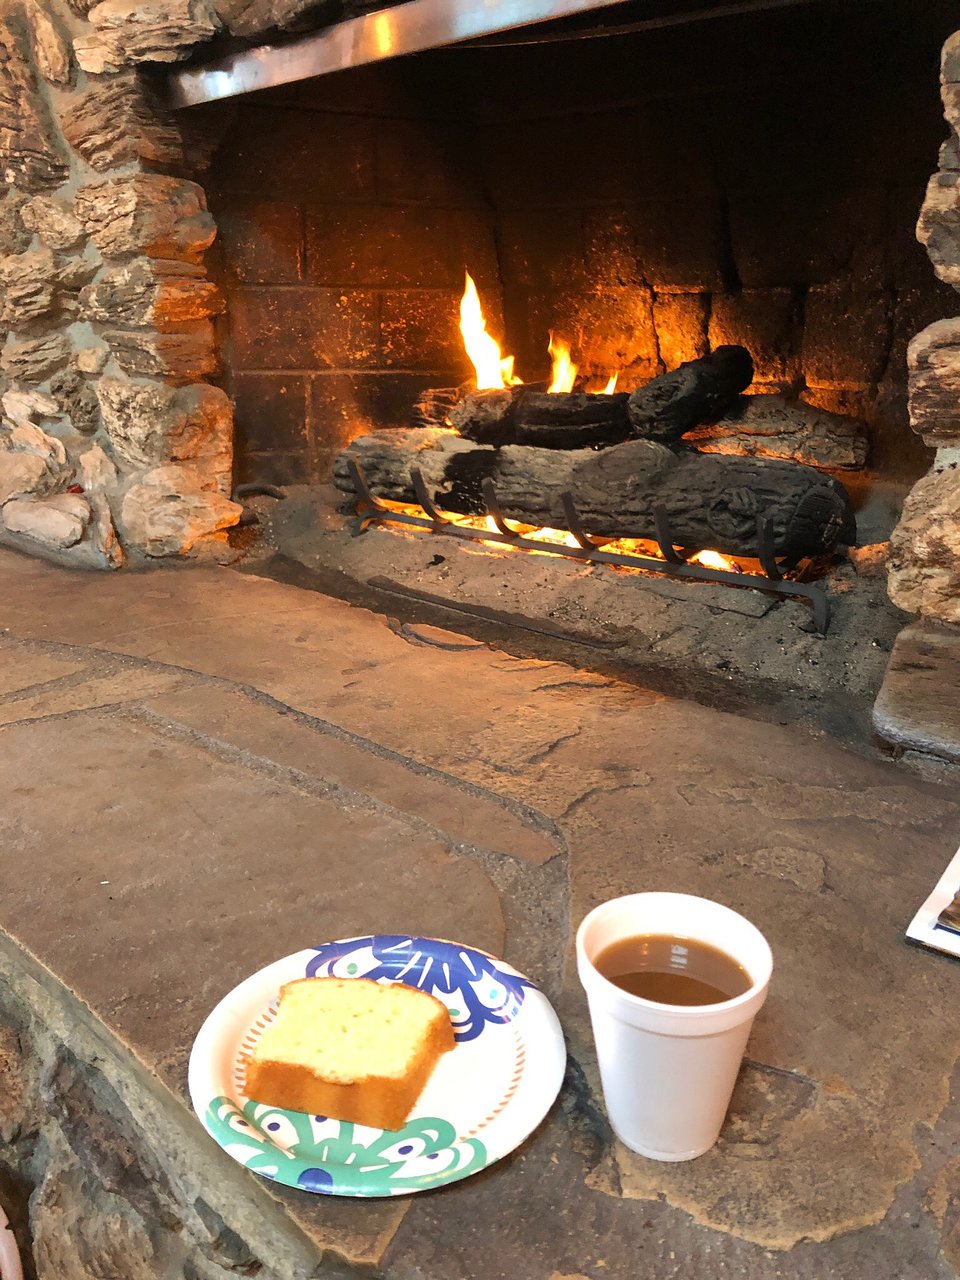 Fireplace Santa Rosa Lovely Bluebird Inn $119 $Ì¶1Ì¶2Ì¶9Ì¶ Updated 2019 Prices & Reviews